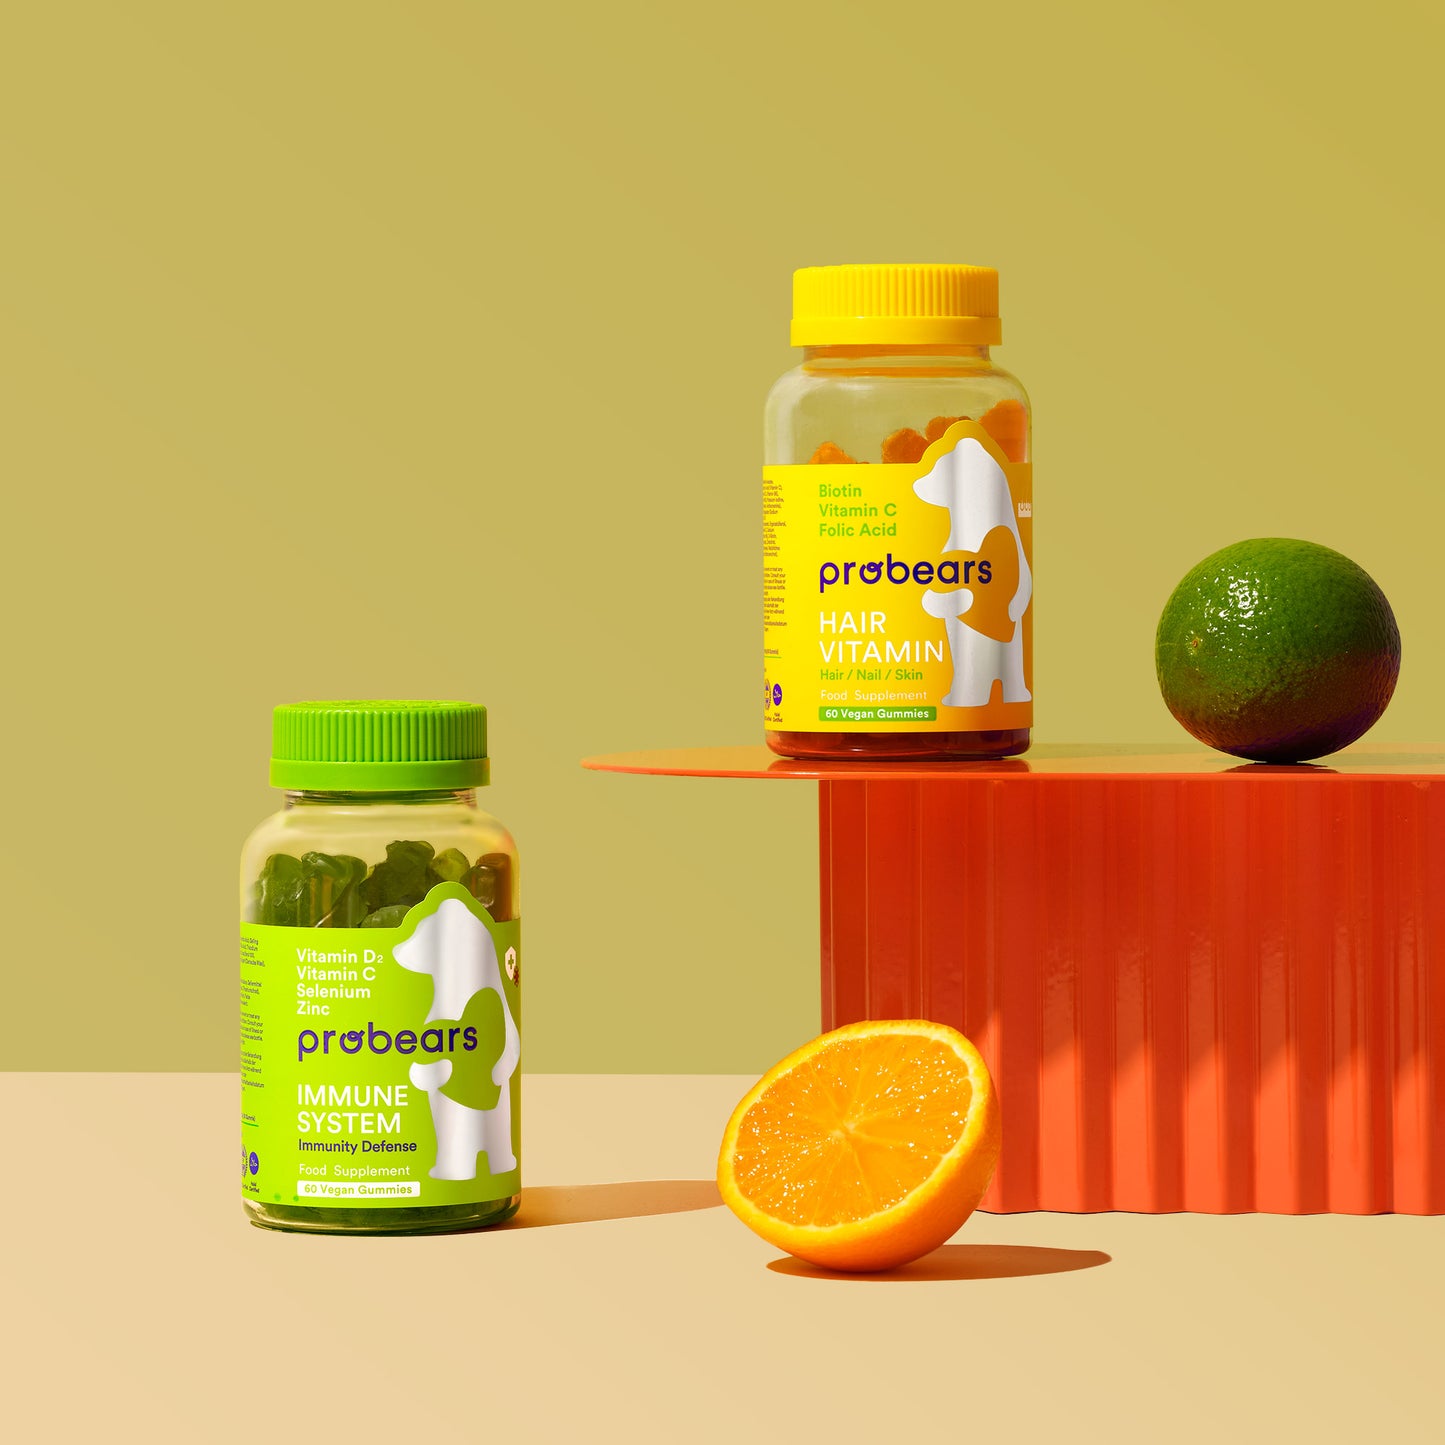 Kombipackung von Probears Immune System und Hair Vitamin, platziert neben frischen Orangen als Symbol für die natürlichen Vitaminquellen in den Produkten.